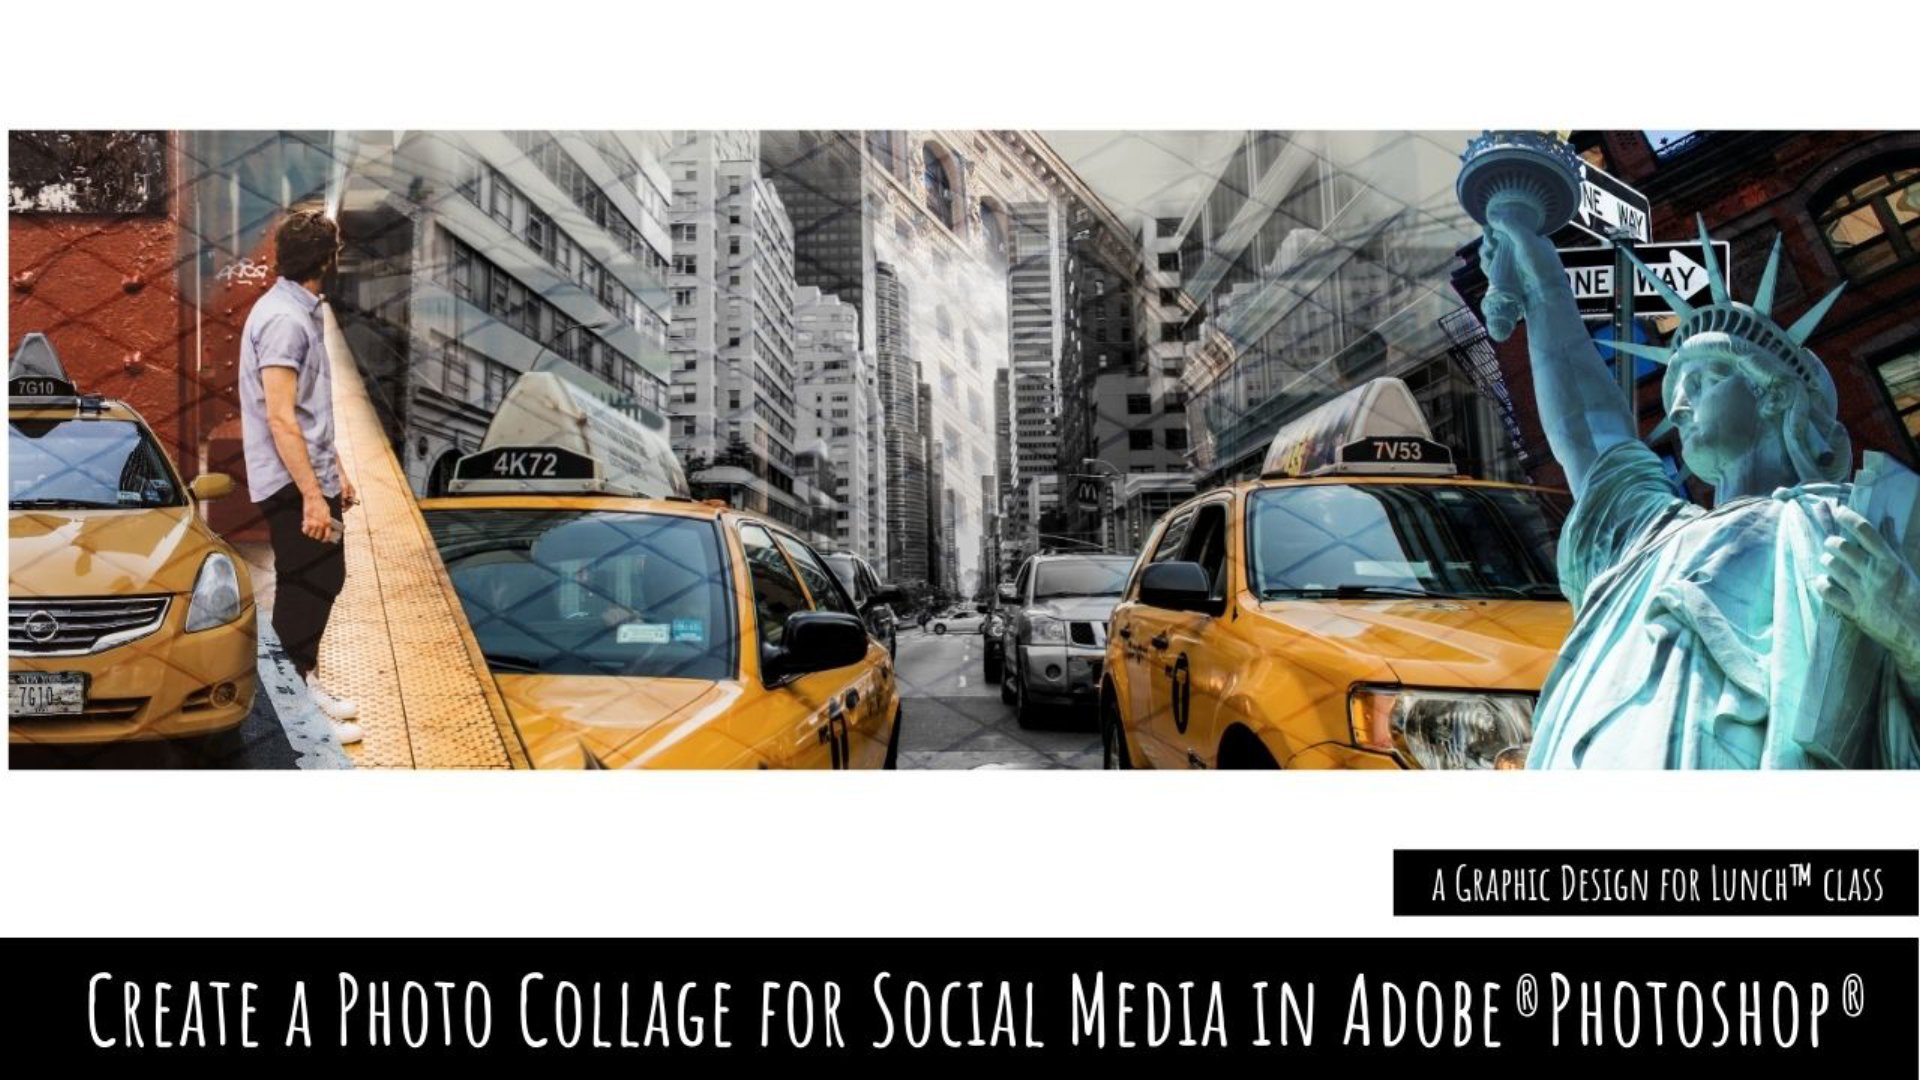 آموزش کلاژ عکس برای رسانه های اجتماعی در Adobe Photoshop - طراحی گرافیکی برای کلاس ناهار